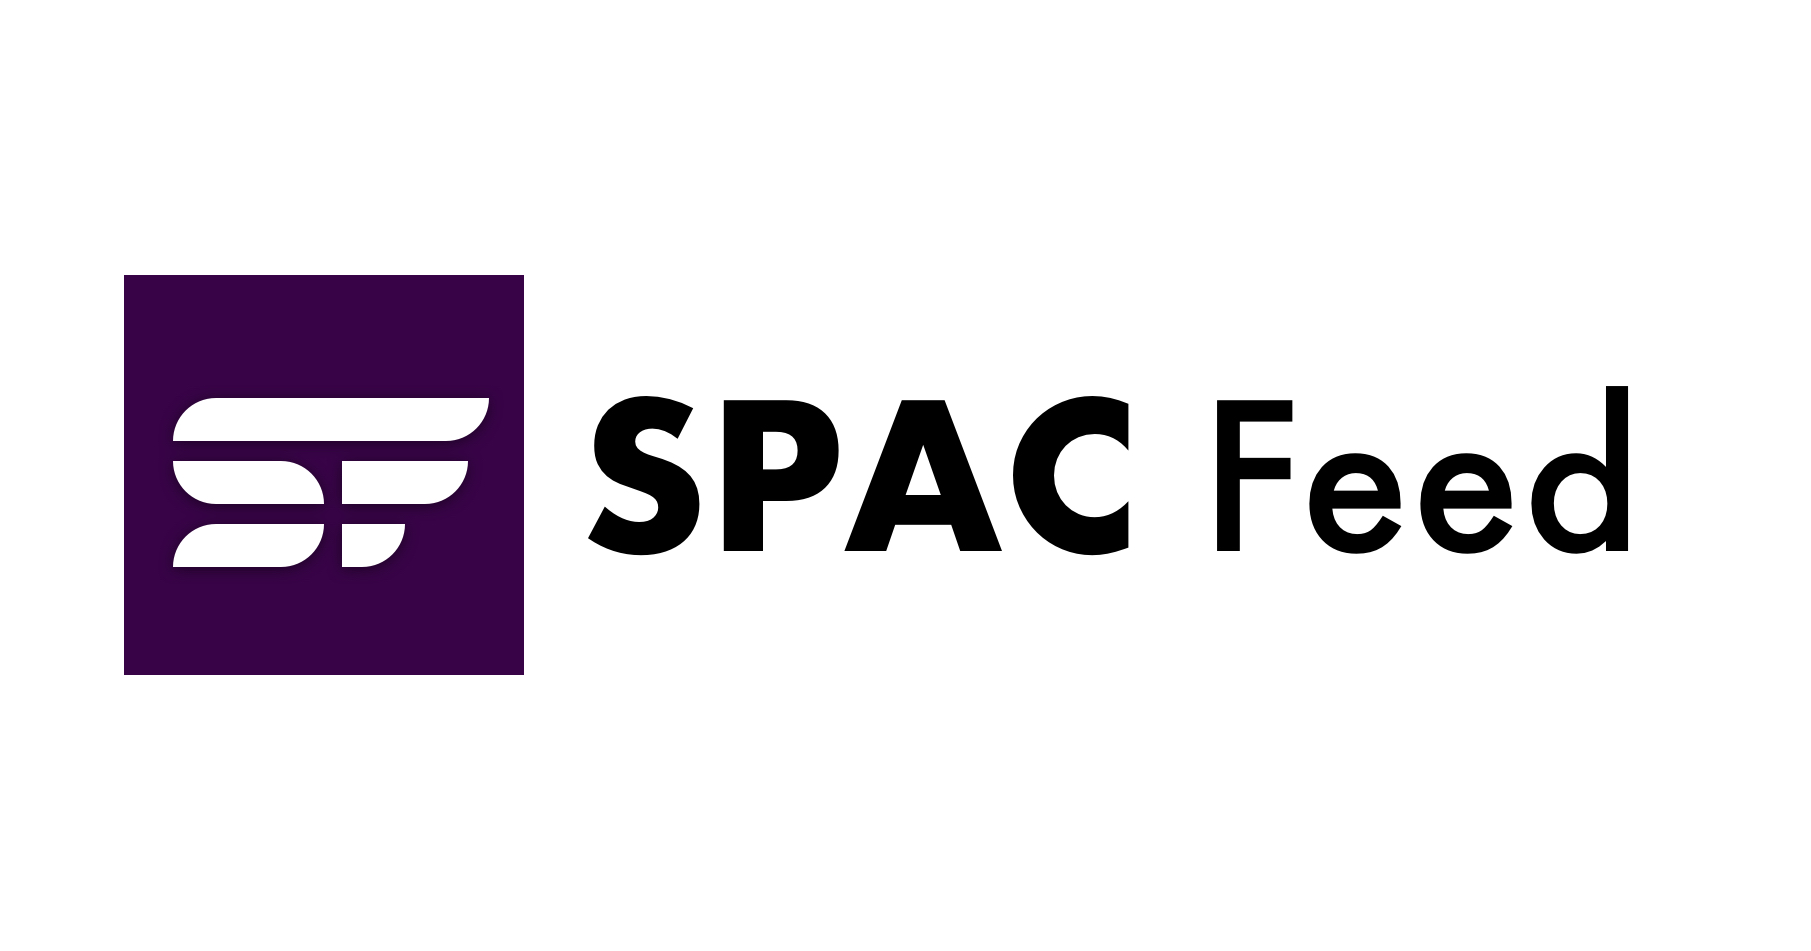 تقرير الاجتماع المفتوح: هيئة الأوراق المالية والبورصة توافق على القواعد النهائية لـ SPAC بأغلبية 3-2 | تغذية SPAC